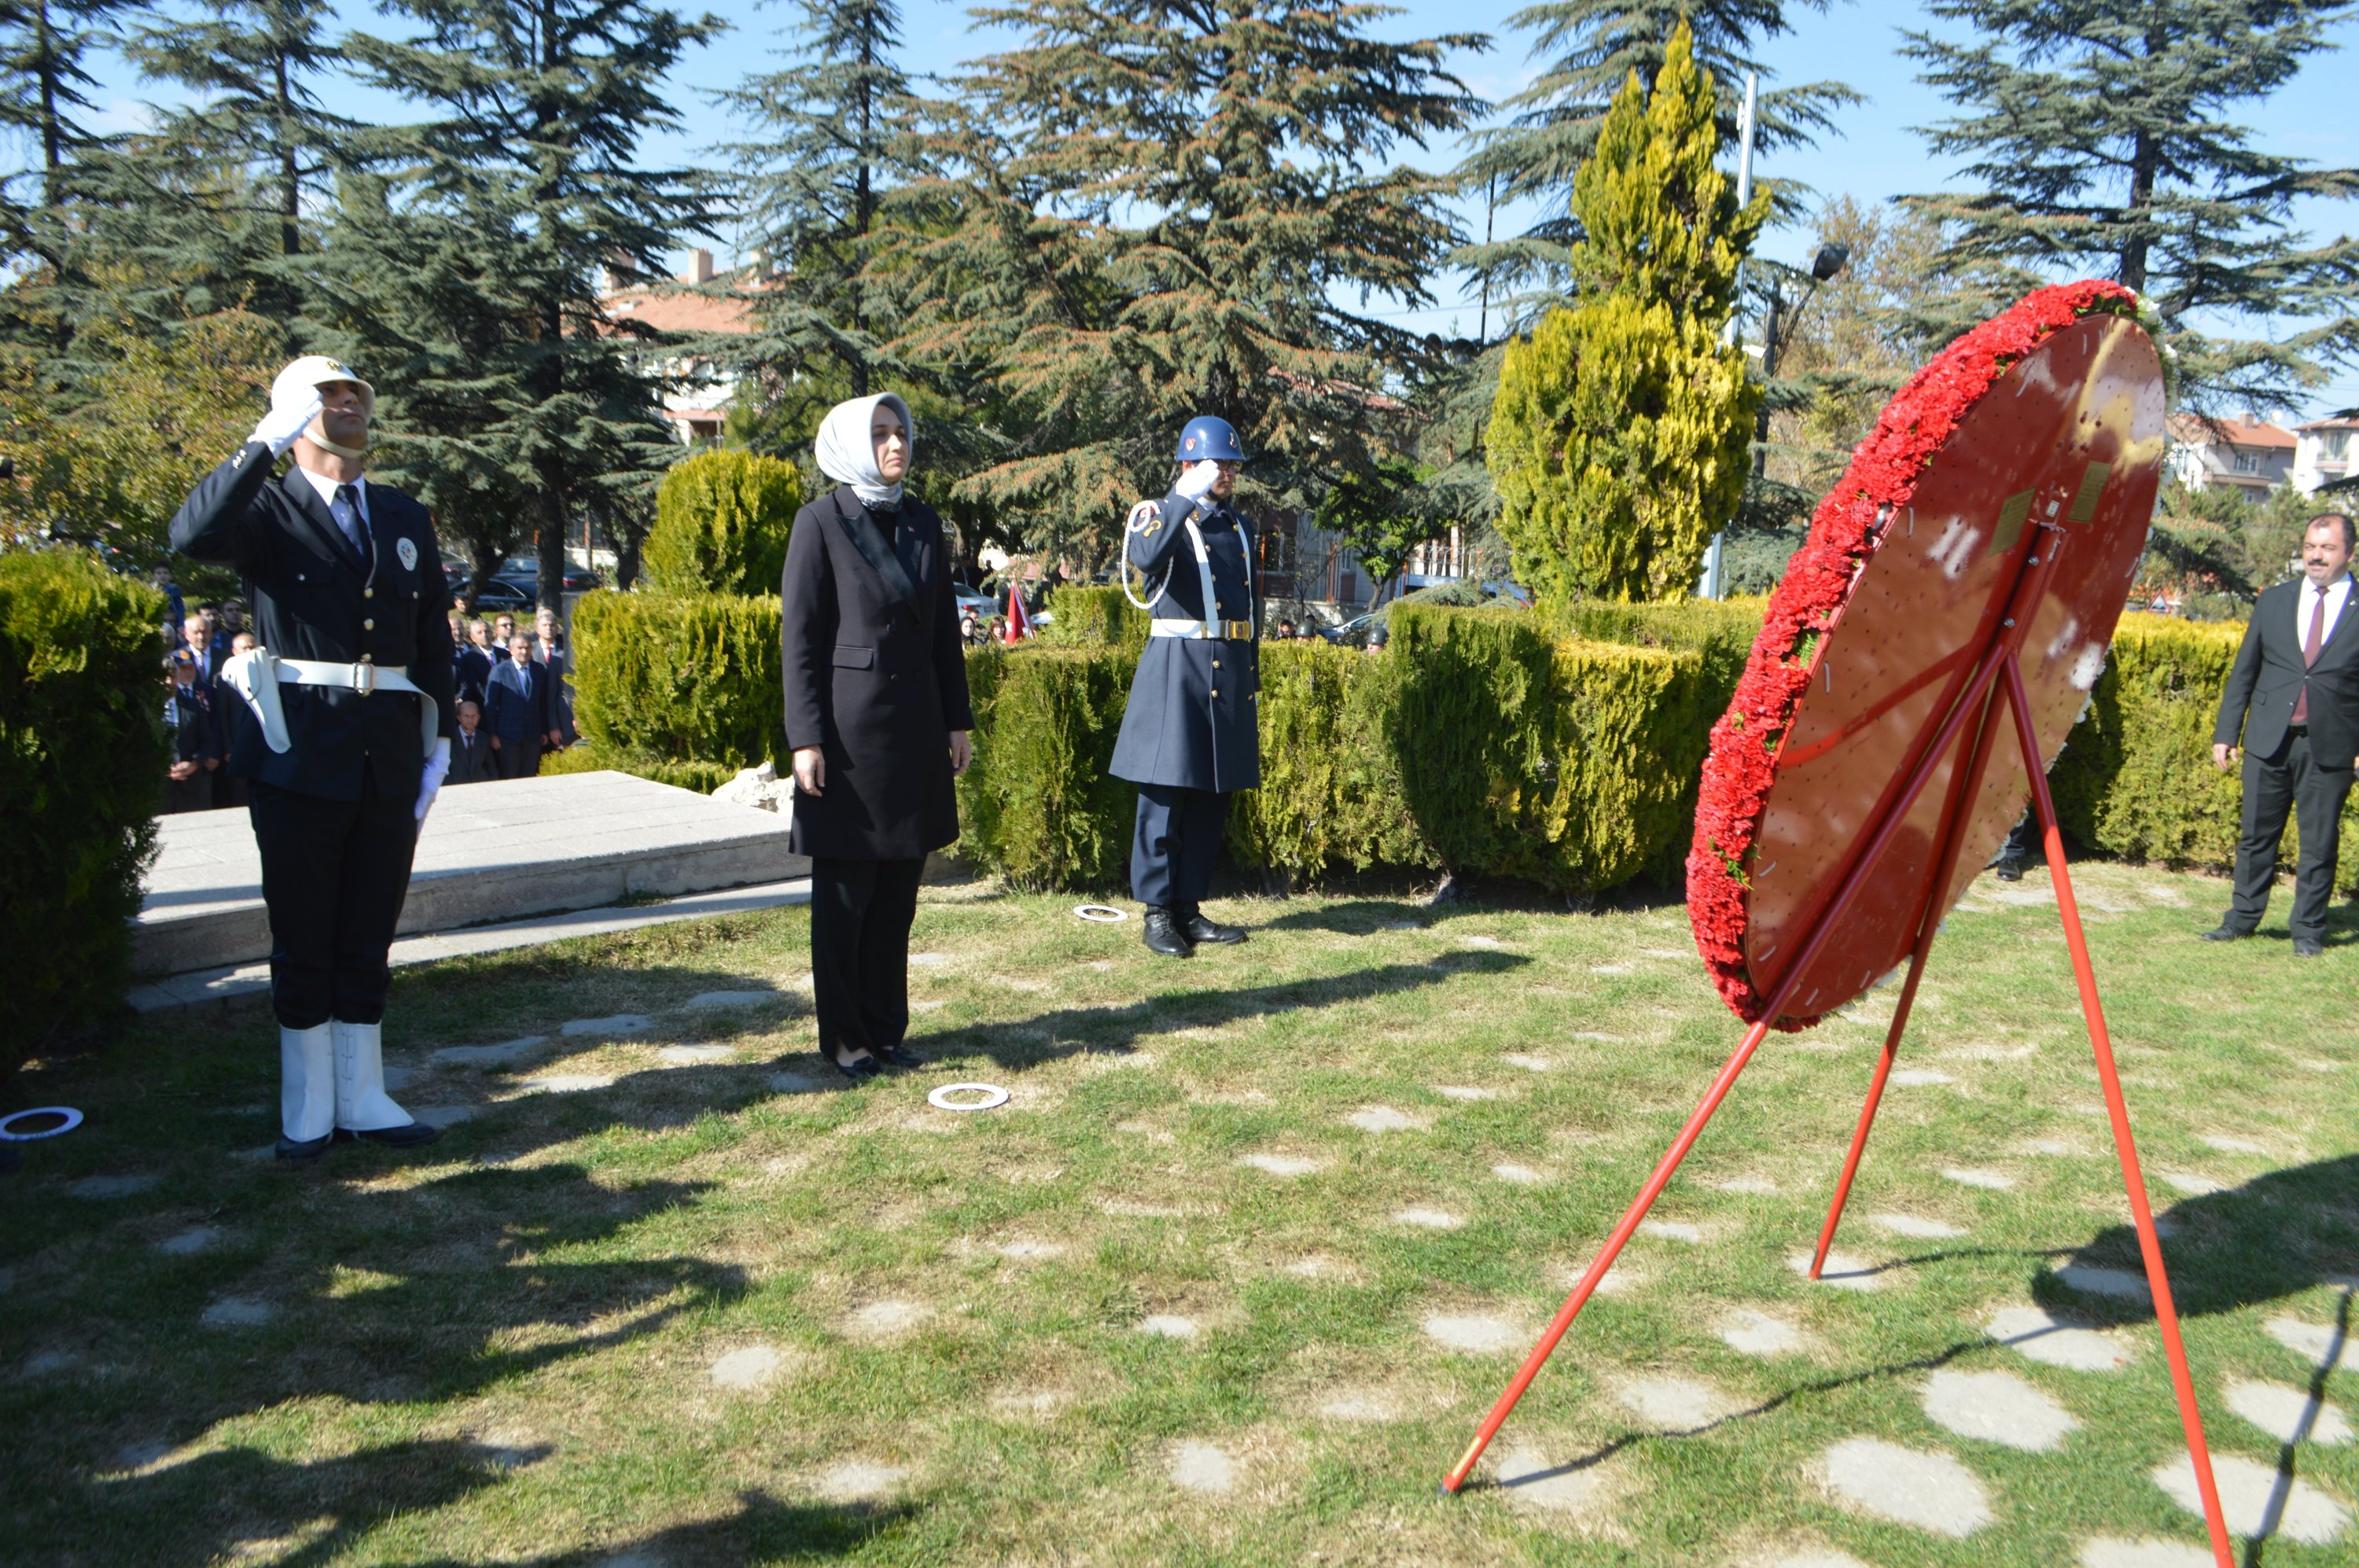 Sebuah upacara diadakan di Hari Republik Afyonkarahisar.  Gubernur Kübra Güran Yiğitbaşı (kedua dari kiri), pejabat militer dan negara, guru, siswa dan warga menghadiri upacara di Kocatepe Park, Türkiye, 29 Oktober 2022. (AA Photo)